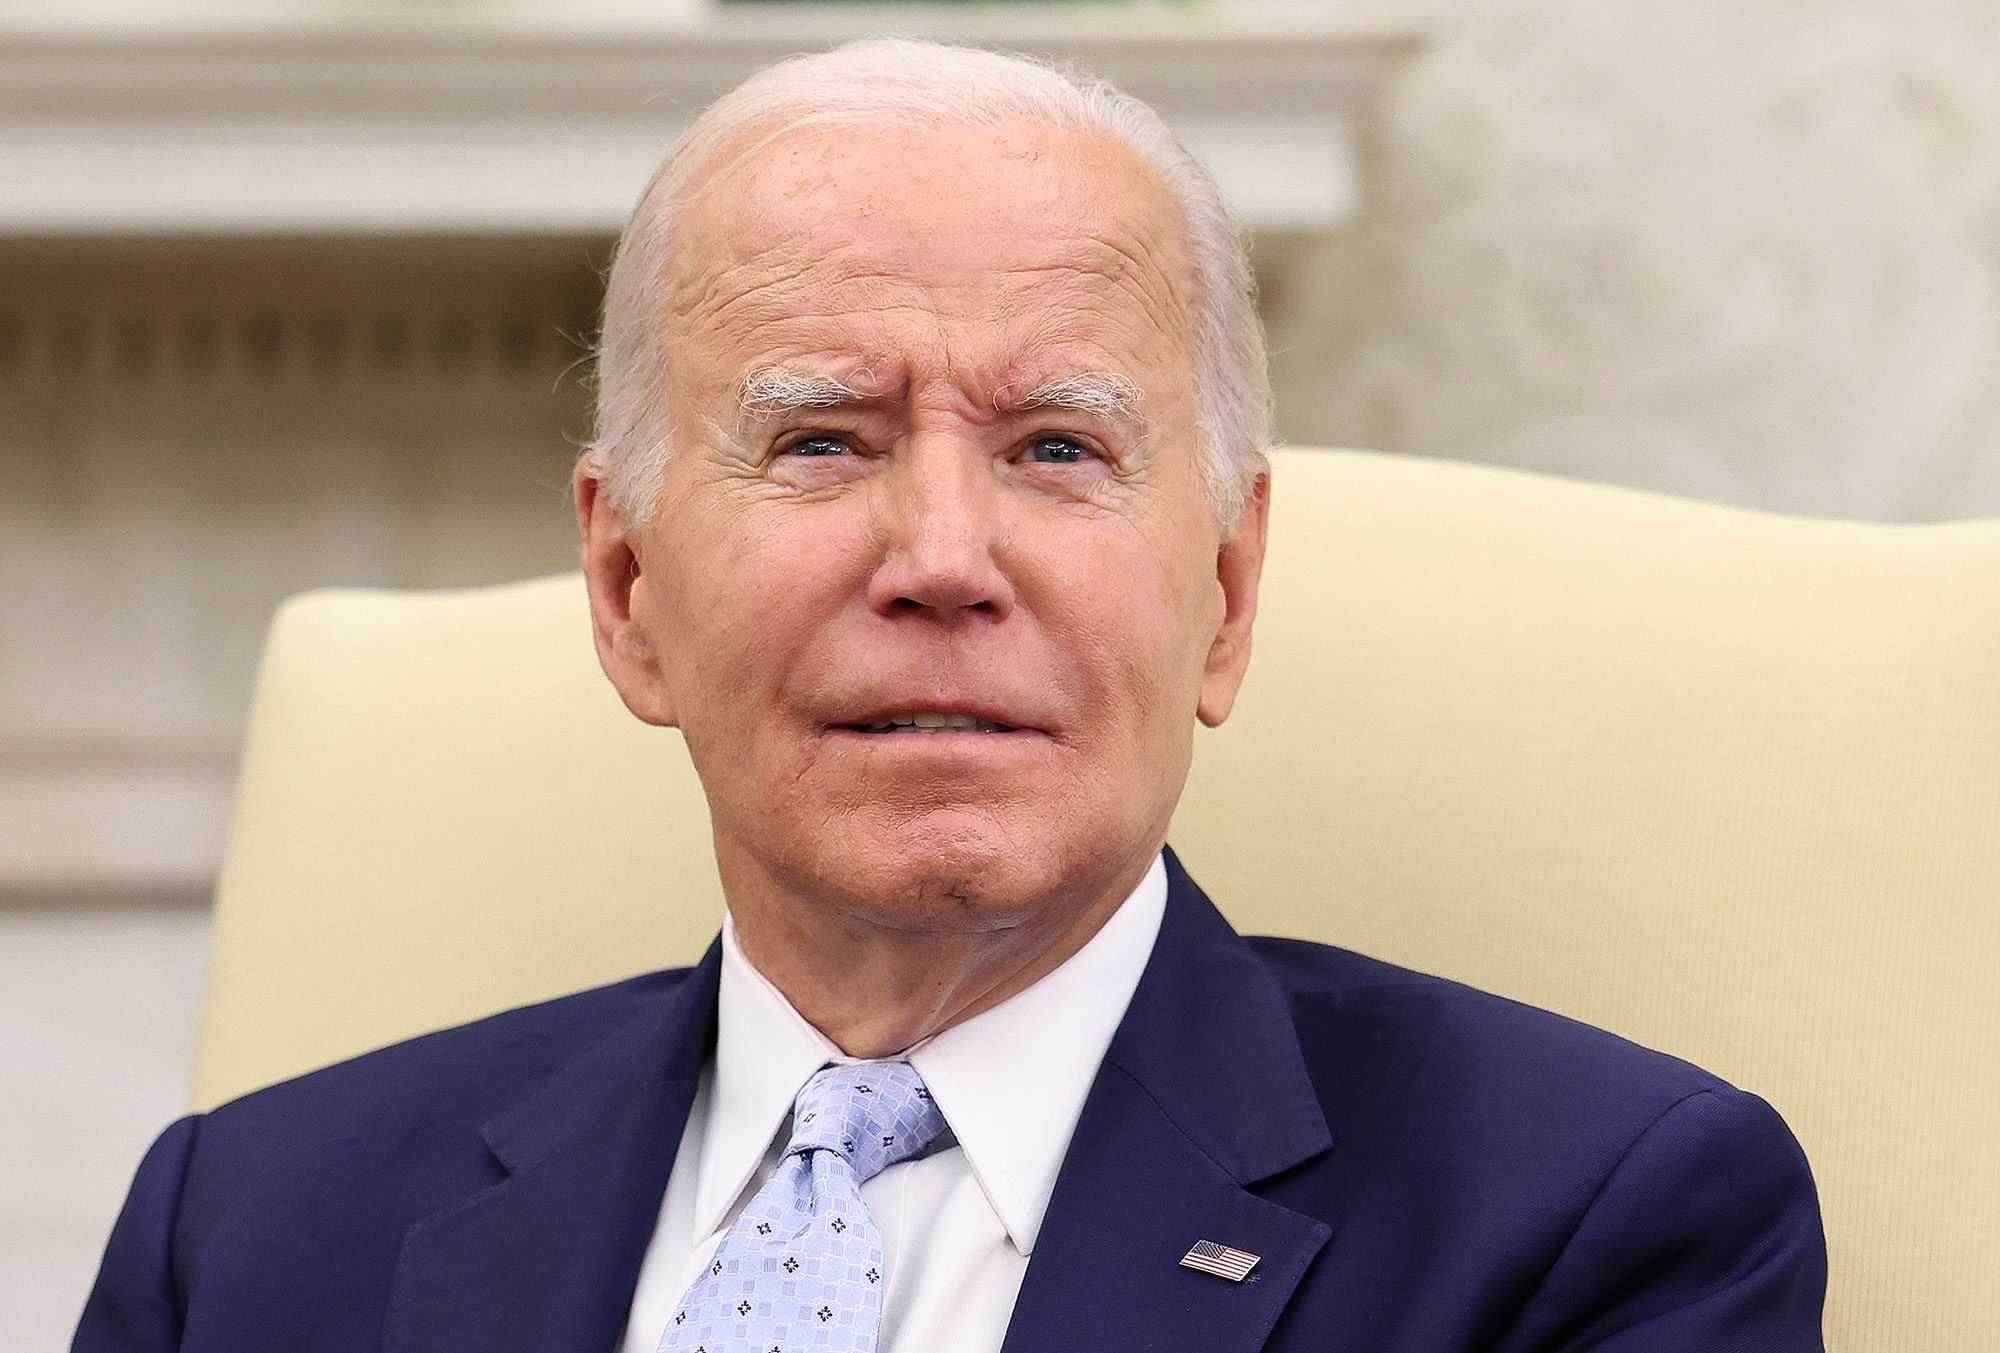 El presidente Joe Biden (Crédito: Kevin Dietsch/Getty Images)